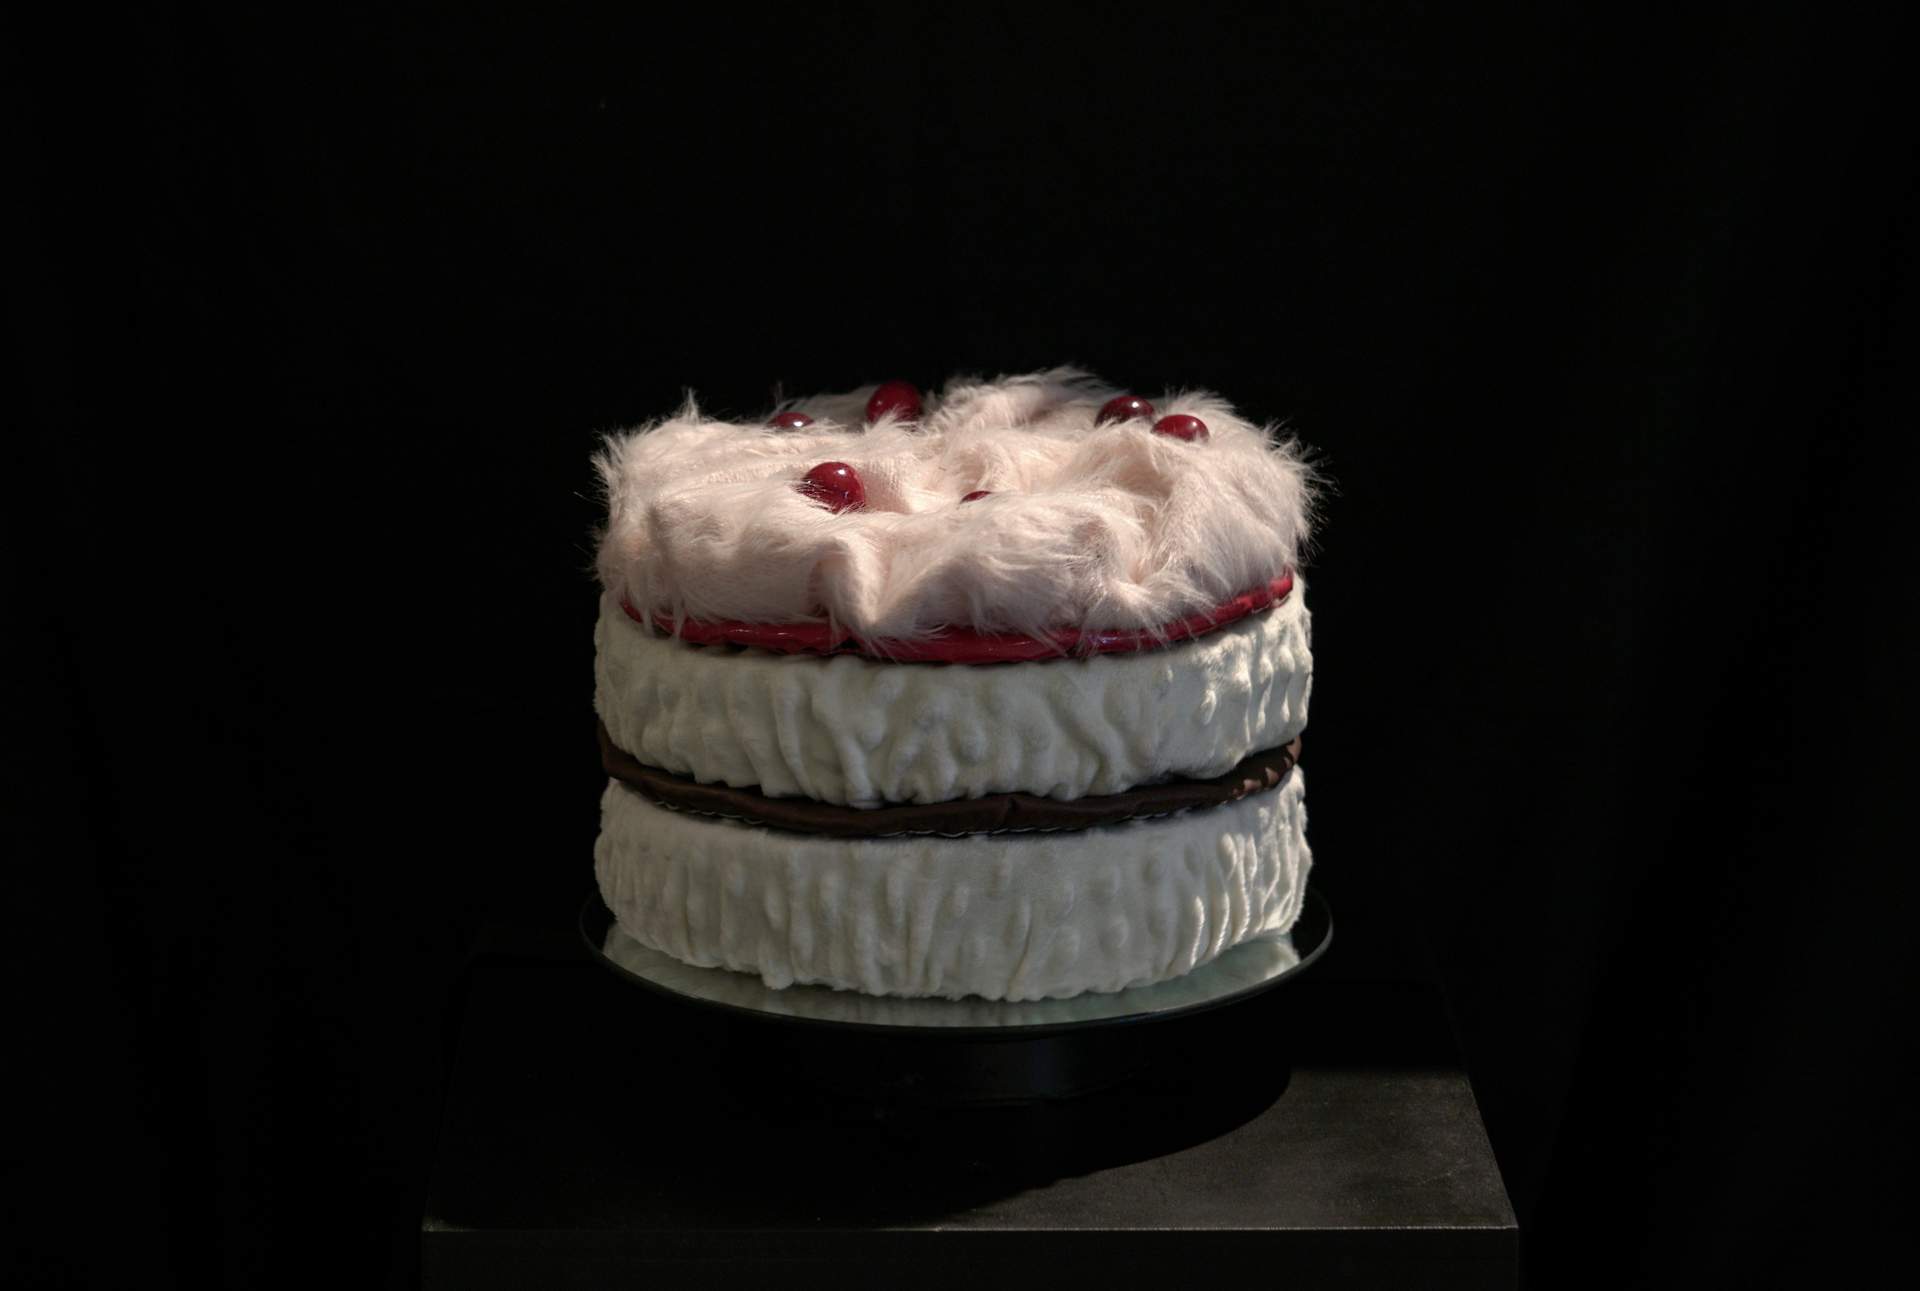 Cherry Layer Cake